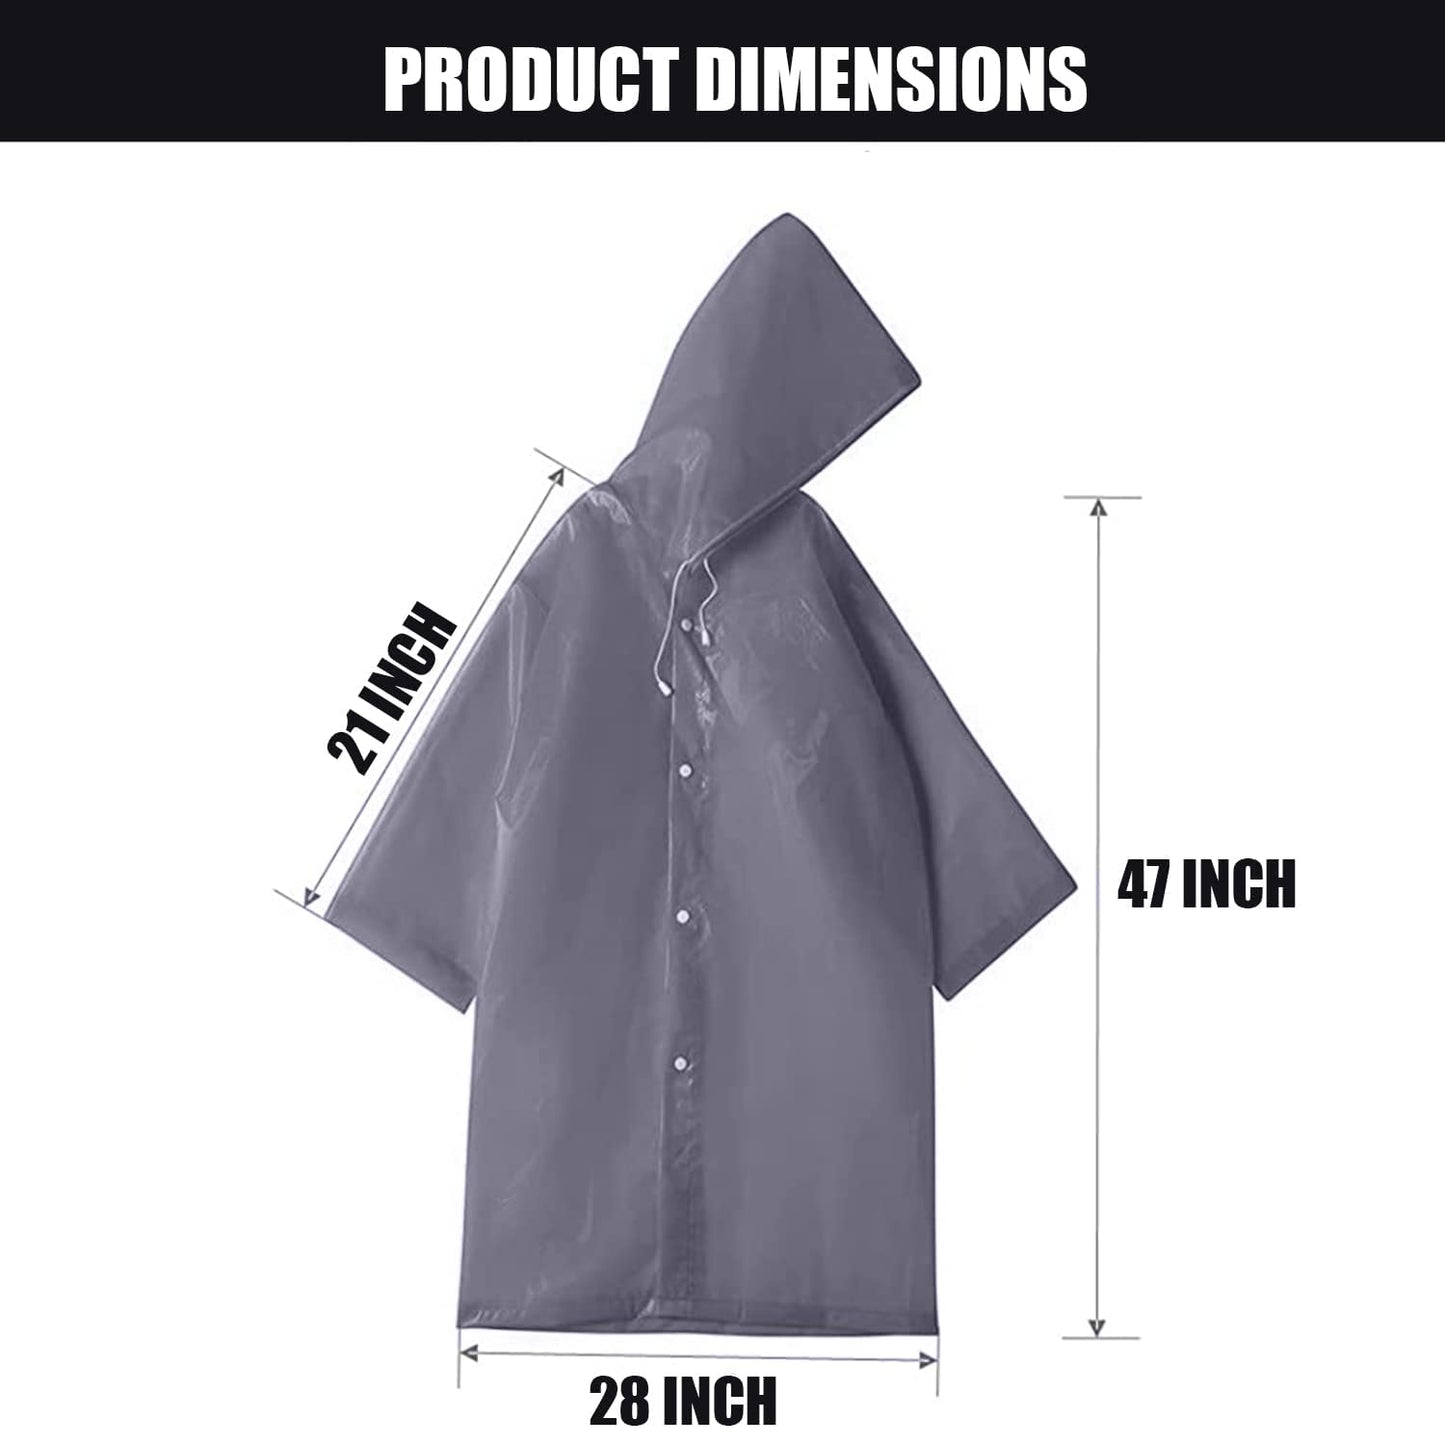 Allextreme EVA Waterproof Rain Coat Hooded Outdoor Water Resistant Suit Portable Men and Women (1 Pc, Grey)